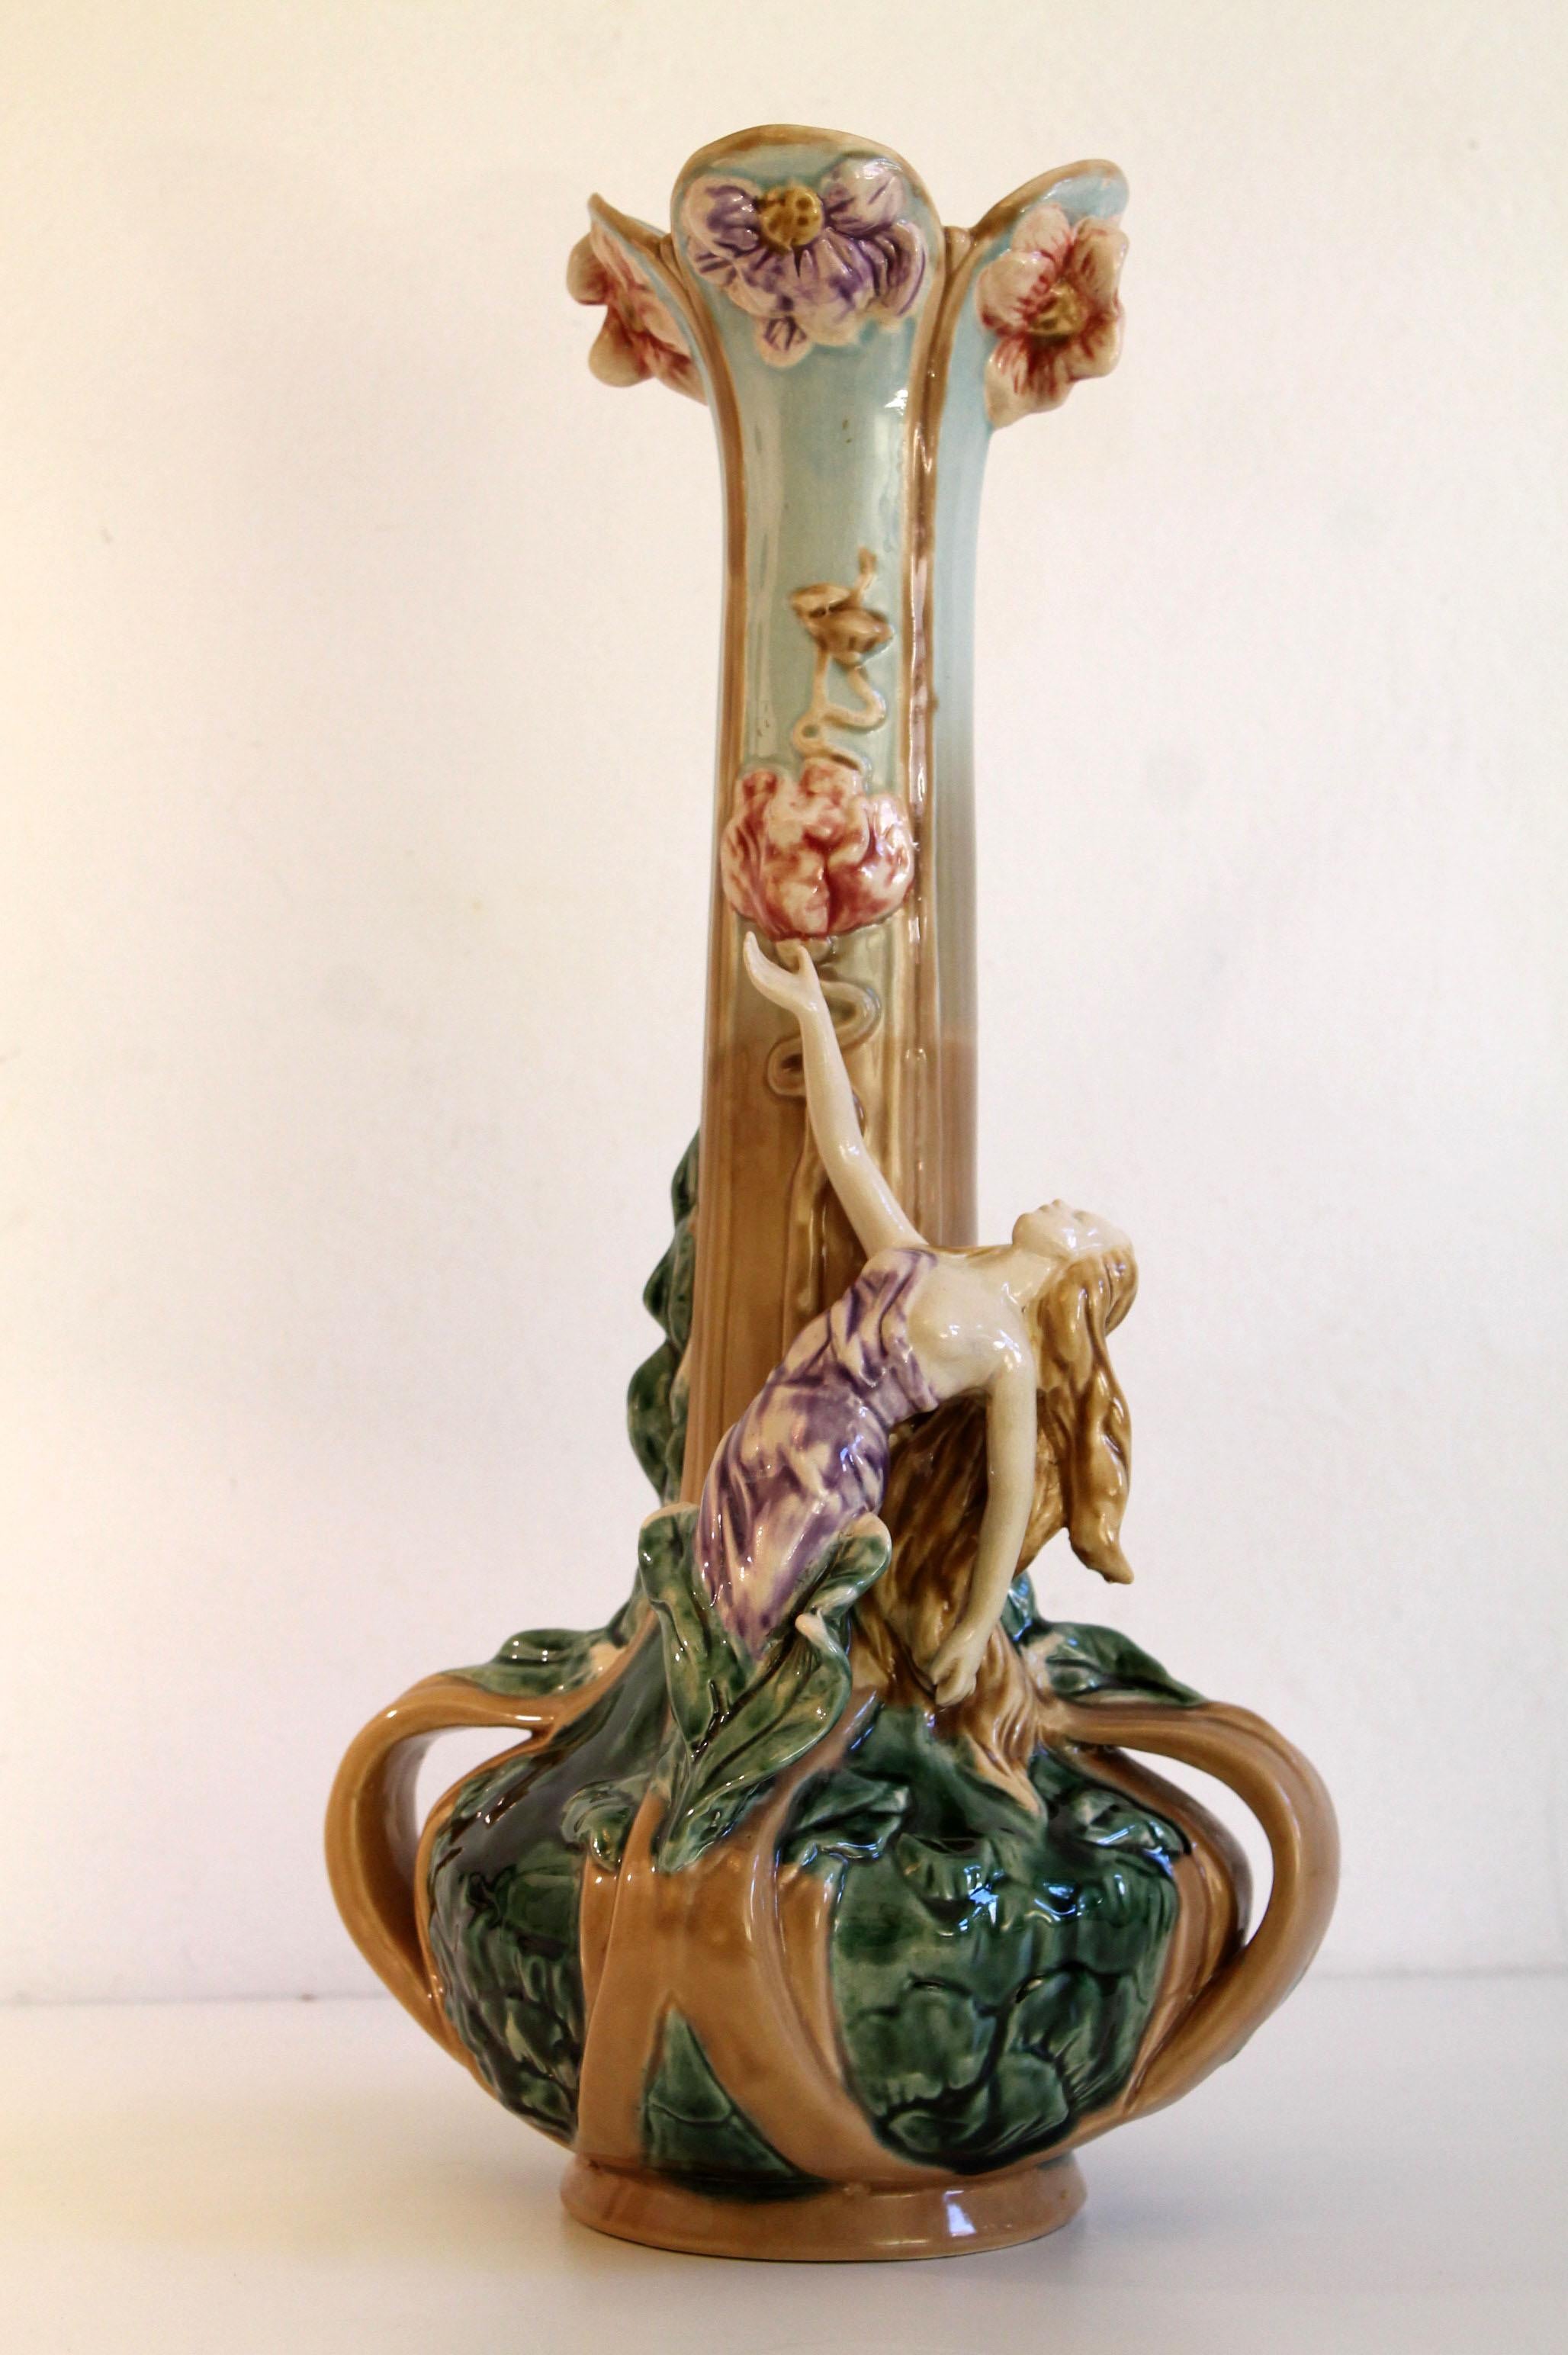 Fabrication : Bohemia Autriche
Description : Vase délicat représentant une femme et richement orné de feuilles et de fleurs.
Année : vers 1900
Estampille du fabricant autrichien Bohemian en bas + modèle #2158
Condit : Pristine. (Pas